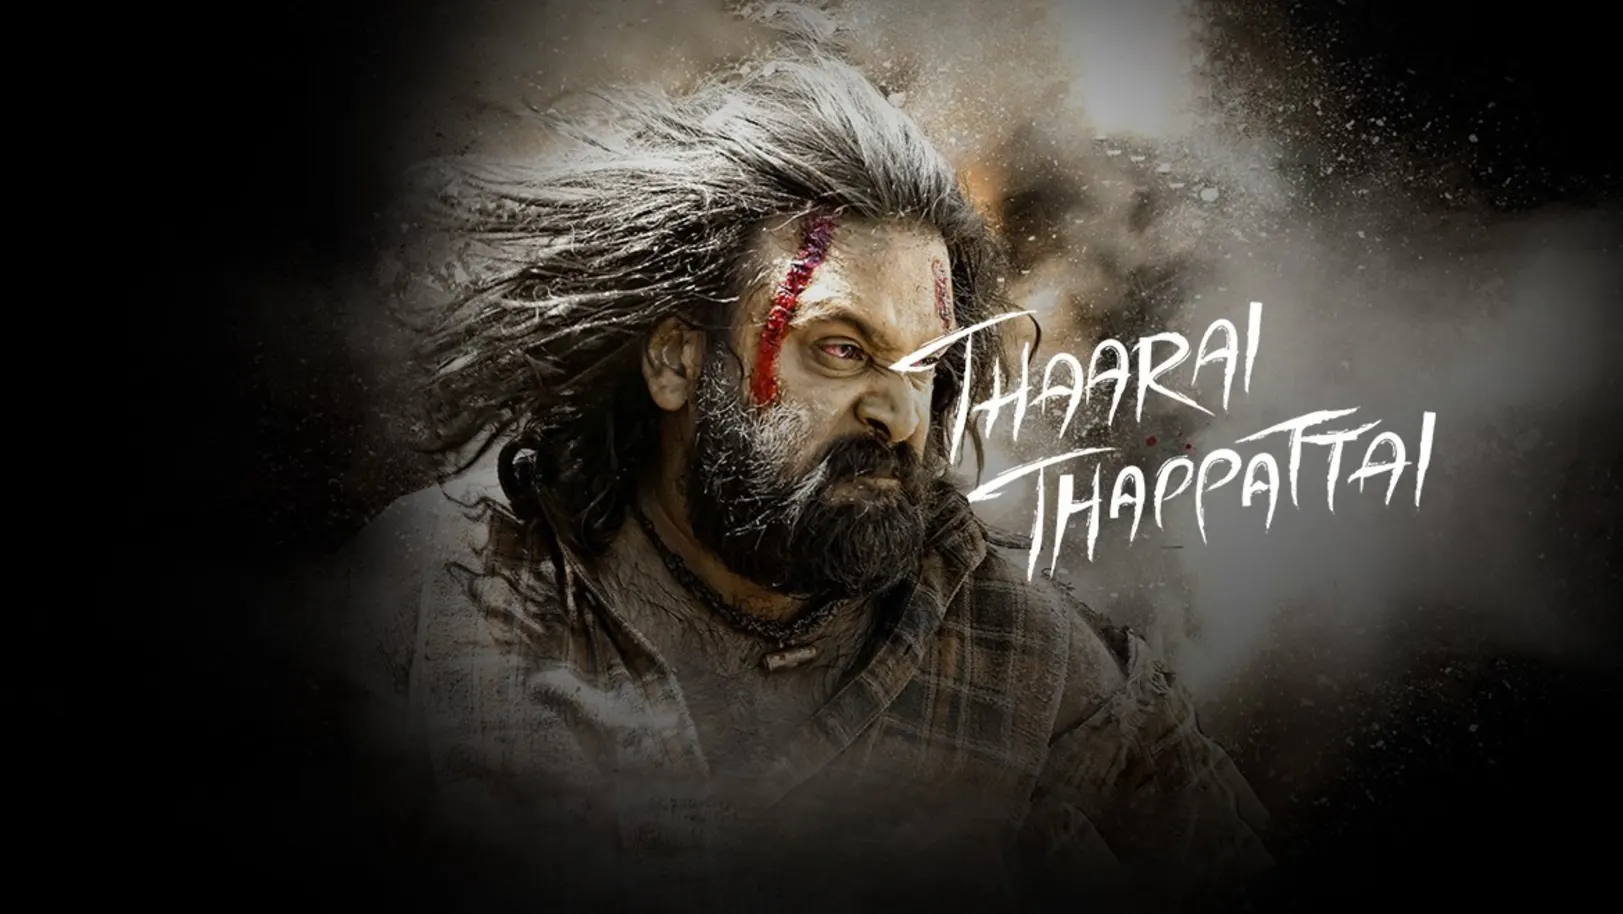 Tharai Thappattai Movie